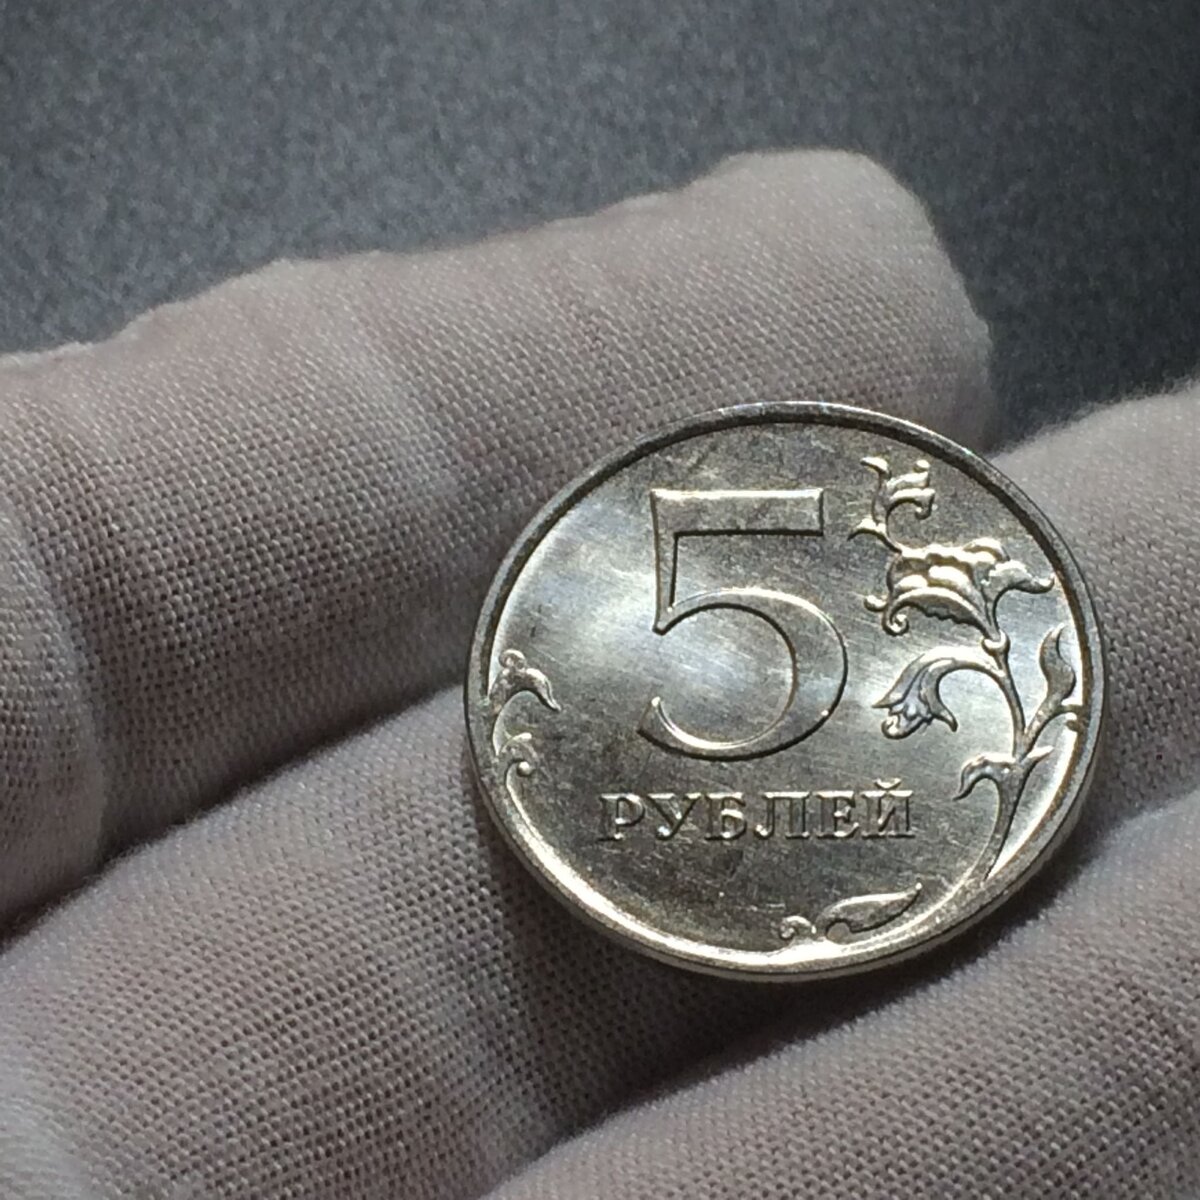 5 рублей 19 года. 5 Рублей 1998 года СПМД штемпель 2.4. Бракованные монеты 5 рублей 1998 года. Монеты с браком. Бракованные монеты 5 рублей.